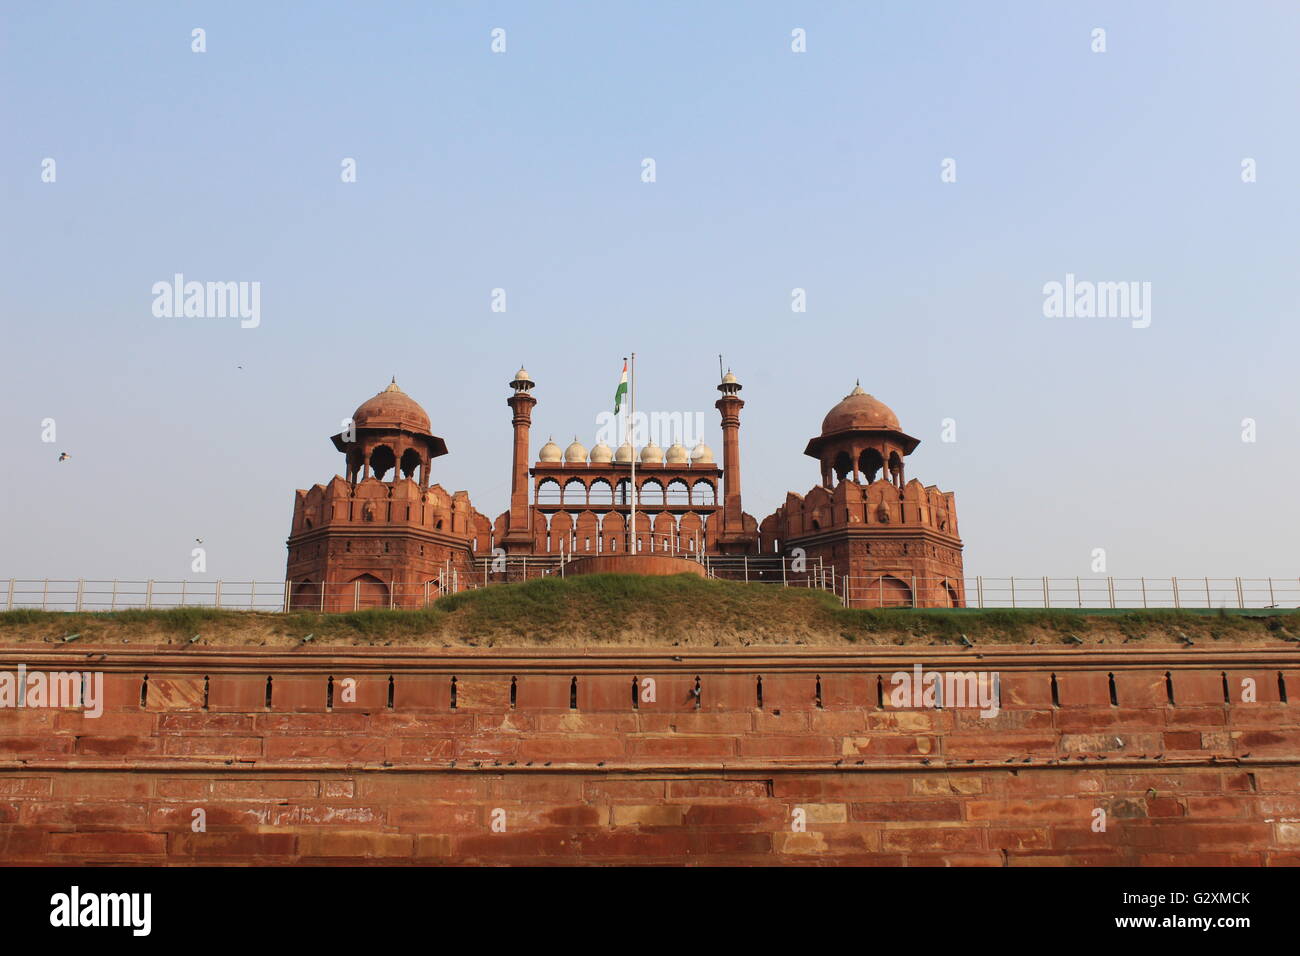 Das Rote Fort - die Residenz des Mughal Kaisers für fast 200 Jahre, bis 1857. Es befindet sich im Zentrum von Delhi. Stockfoto